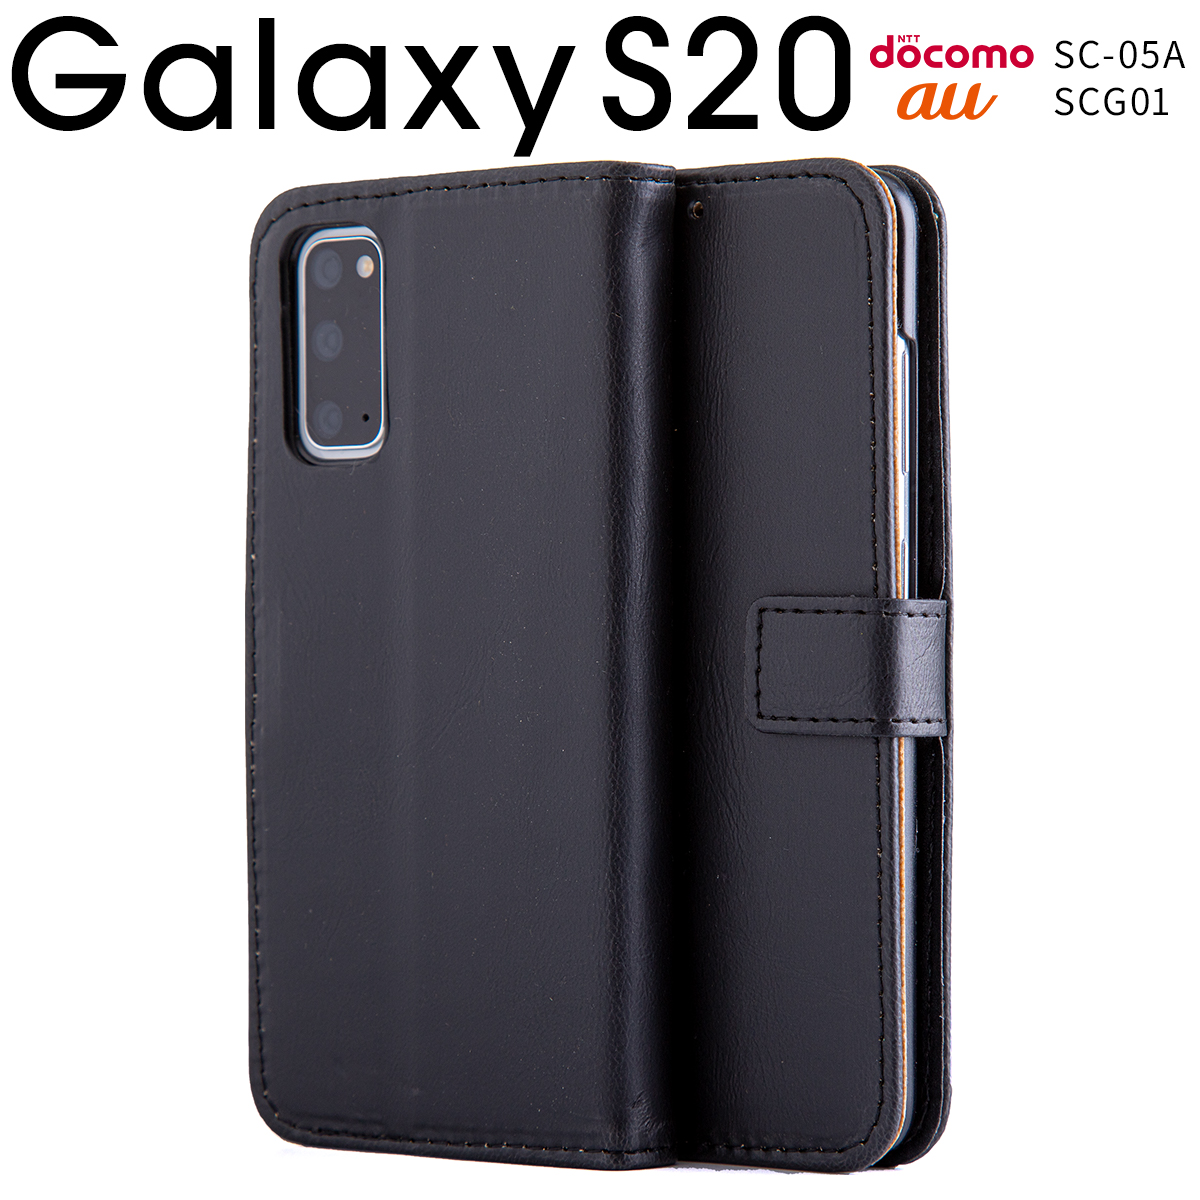 Galaxy S20 5G SC-51A SCG01 アンティークレザー手帳型ケース